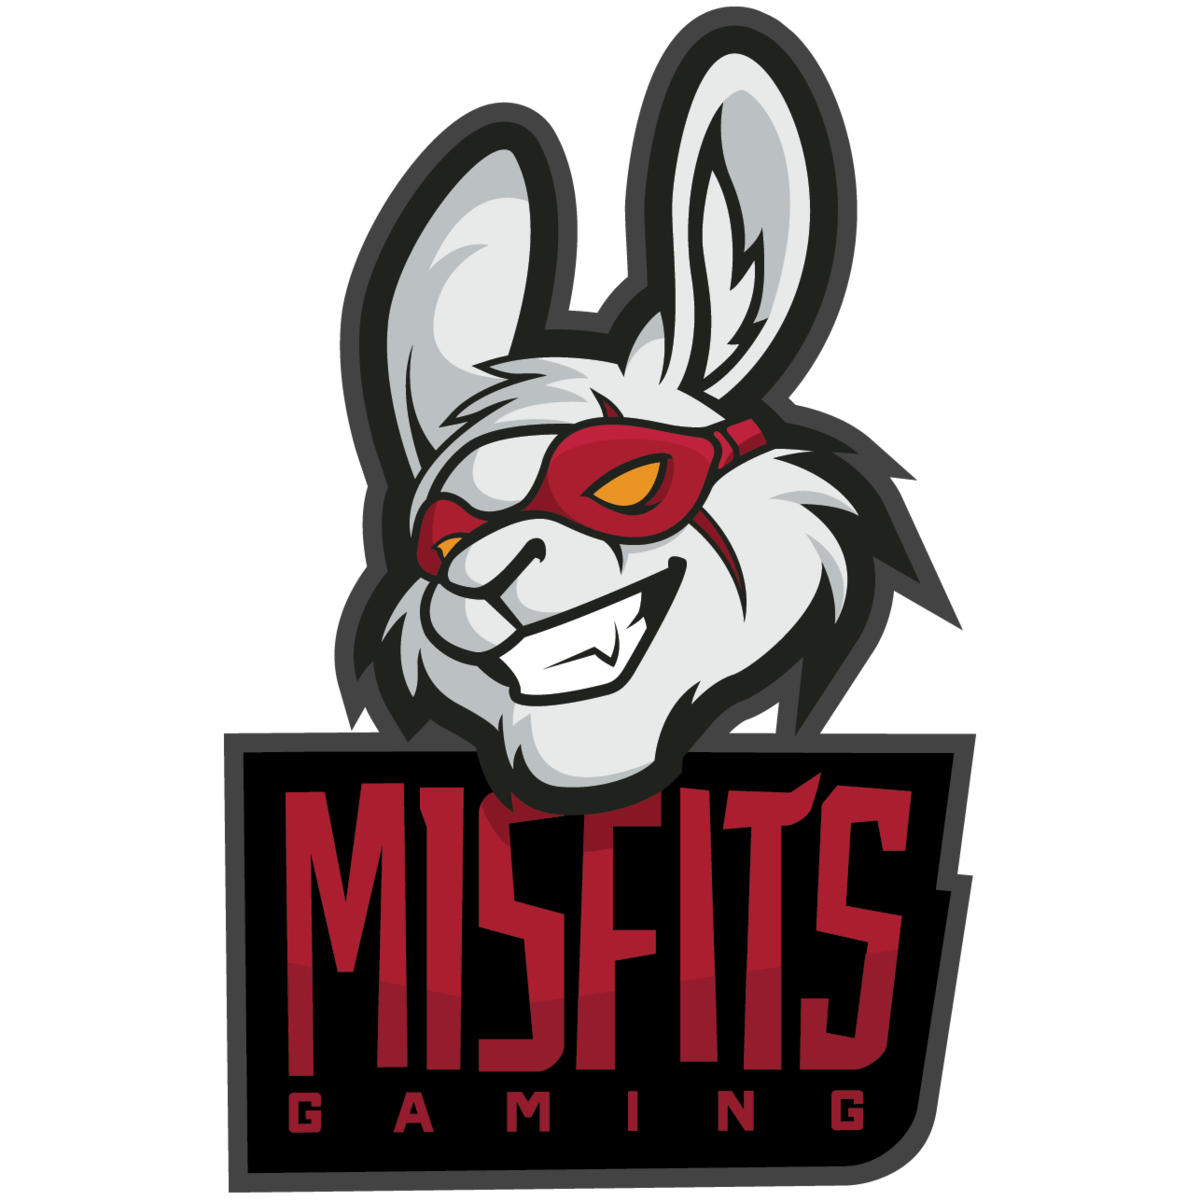 Misfits Logo - Misfits Gaming. League of Legends Esports